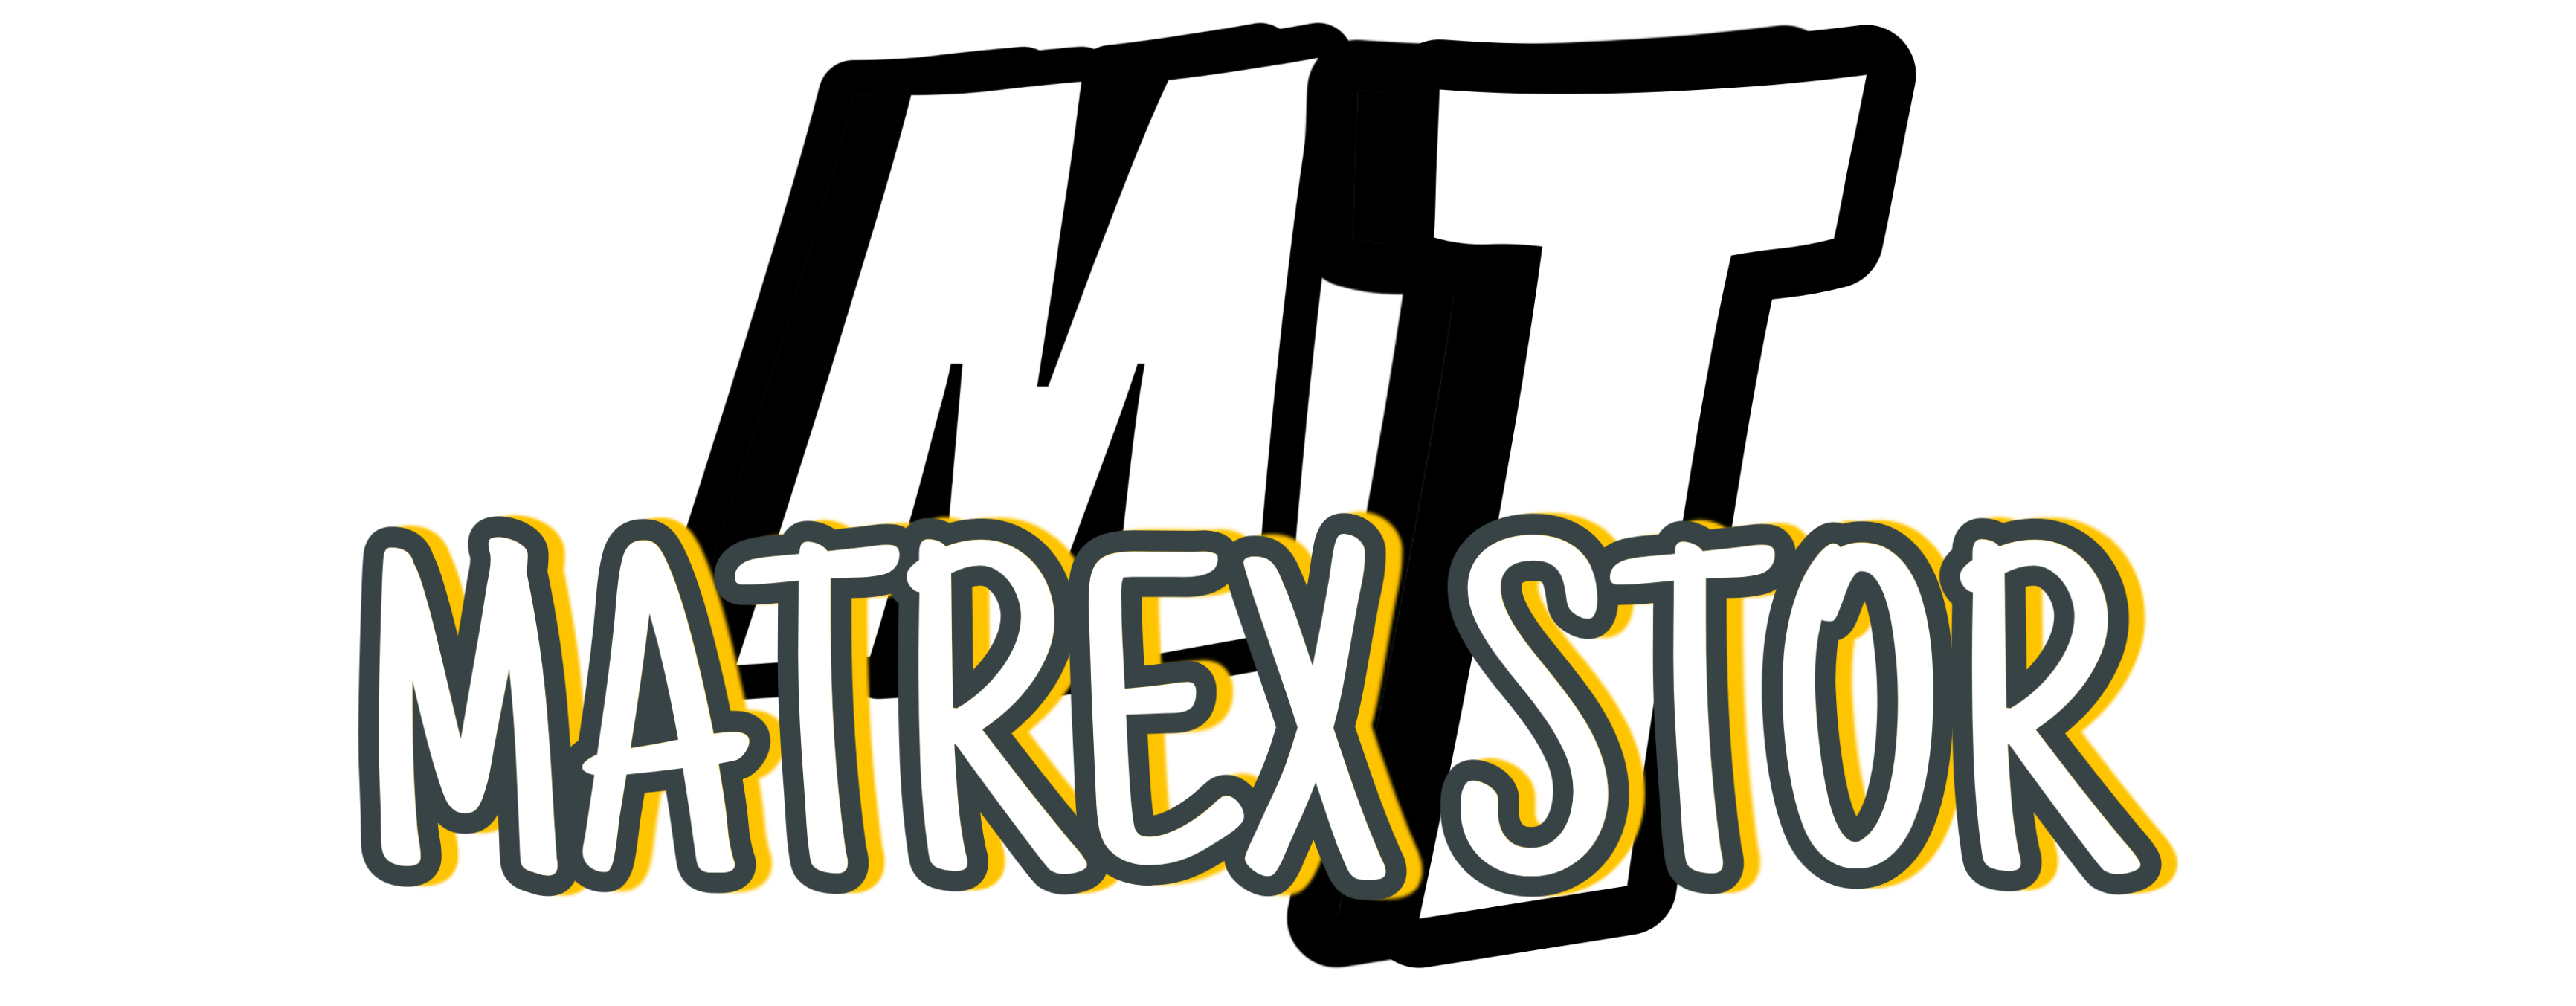 الصفحة الرئيسية - متجر MATREX STOR